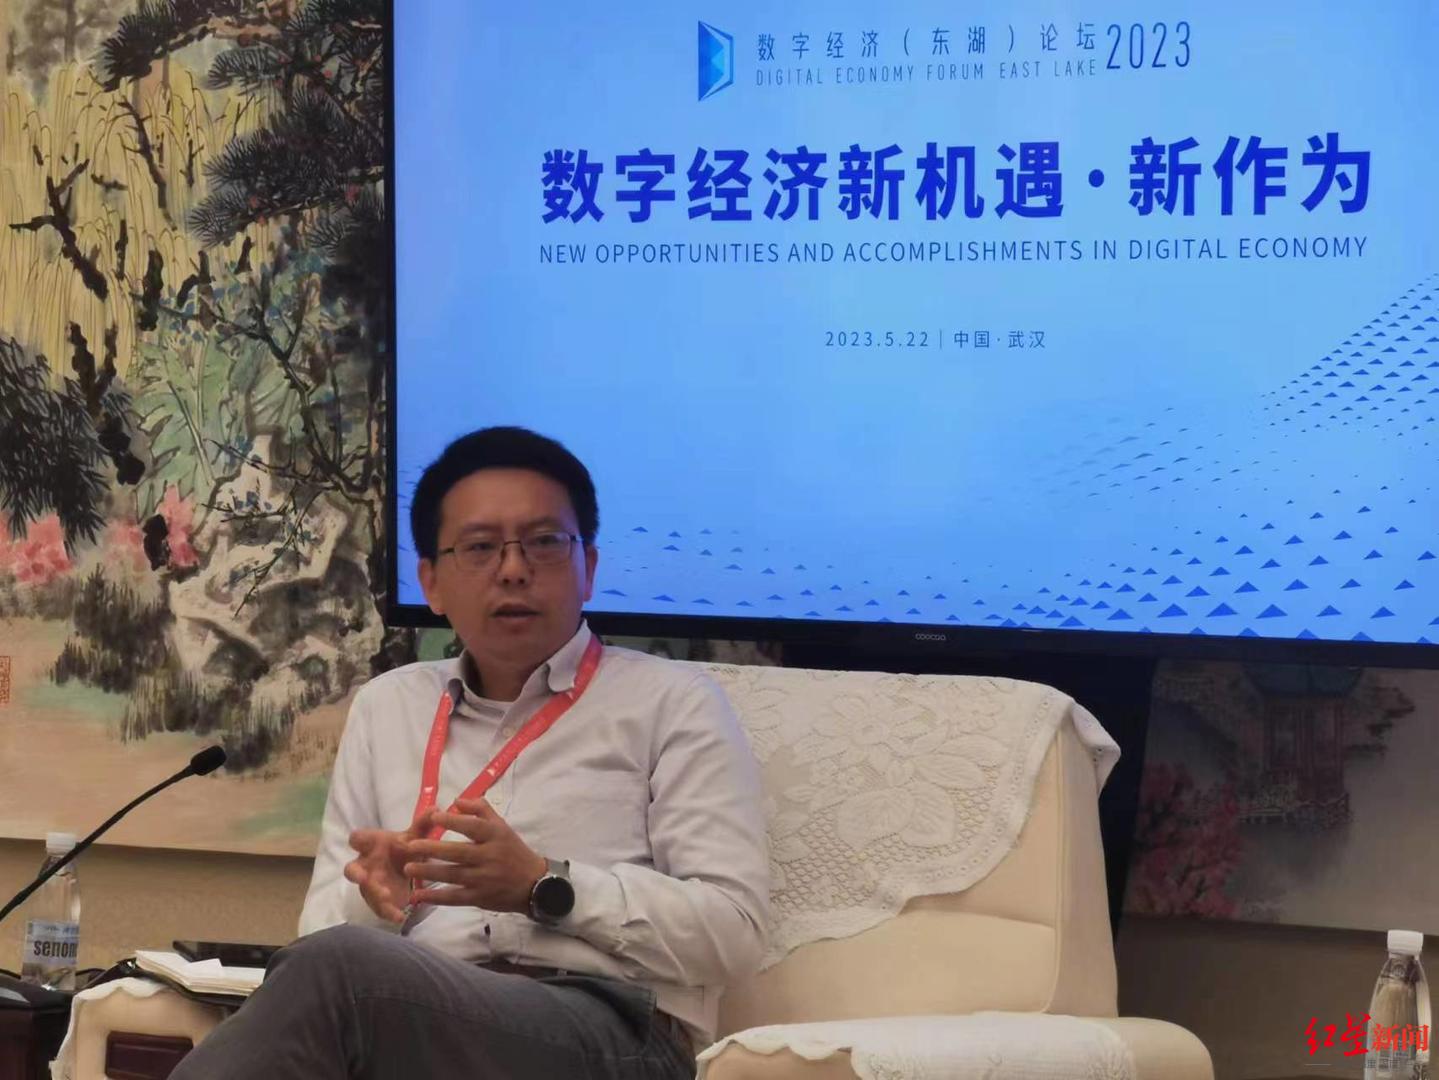 复旦大学教授、上海市数据科学重点实验室主任肖仰华